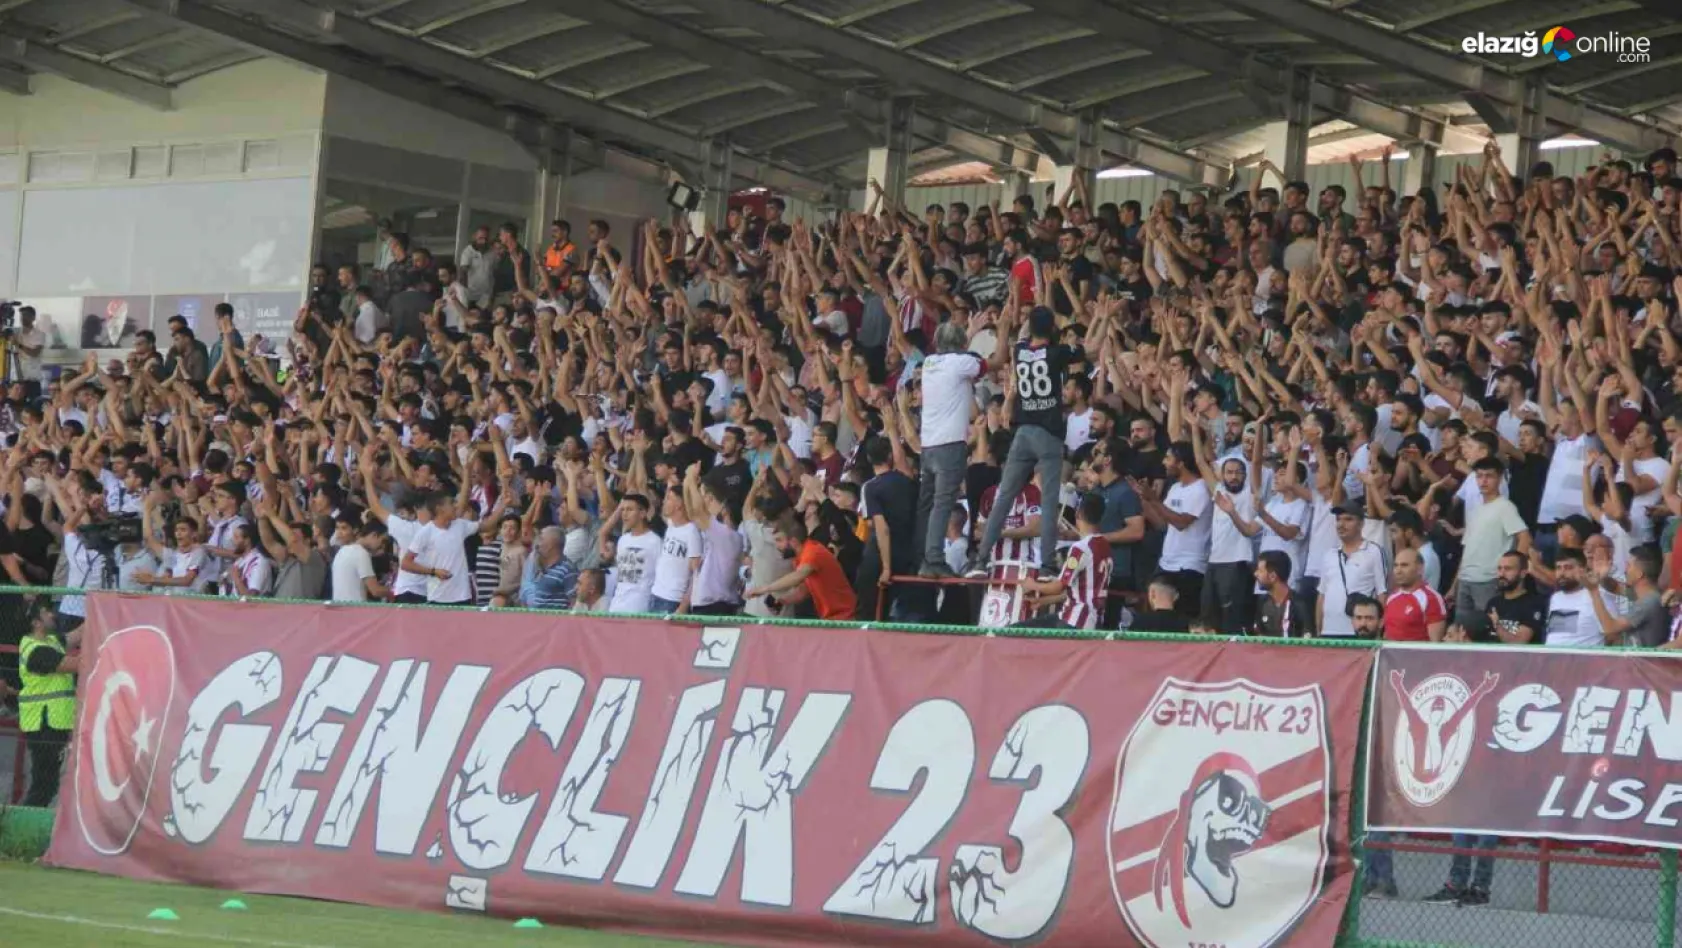 Haydi Gakgo Maça! ES Elazığspor - Amasyaspor FK maç biletleri satışta